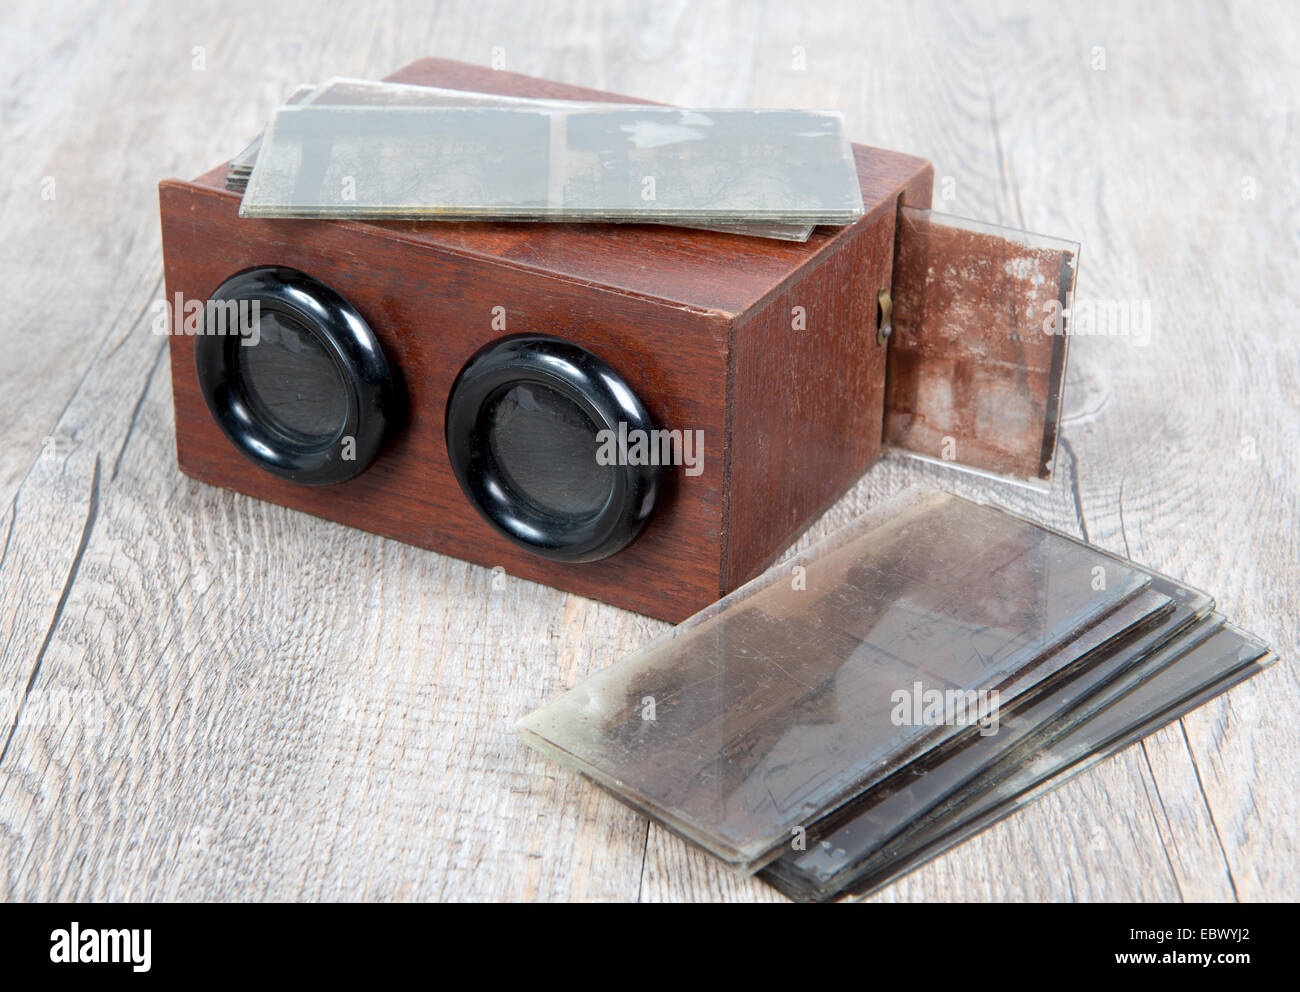 Estereoscopio de madera con placas de vidrio sobre la mesa de madera Foto de stock